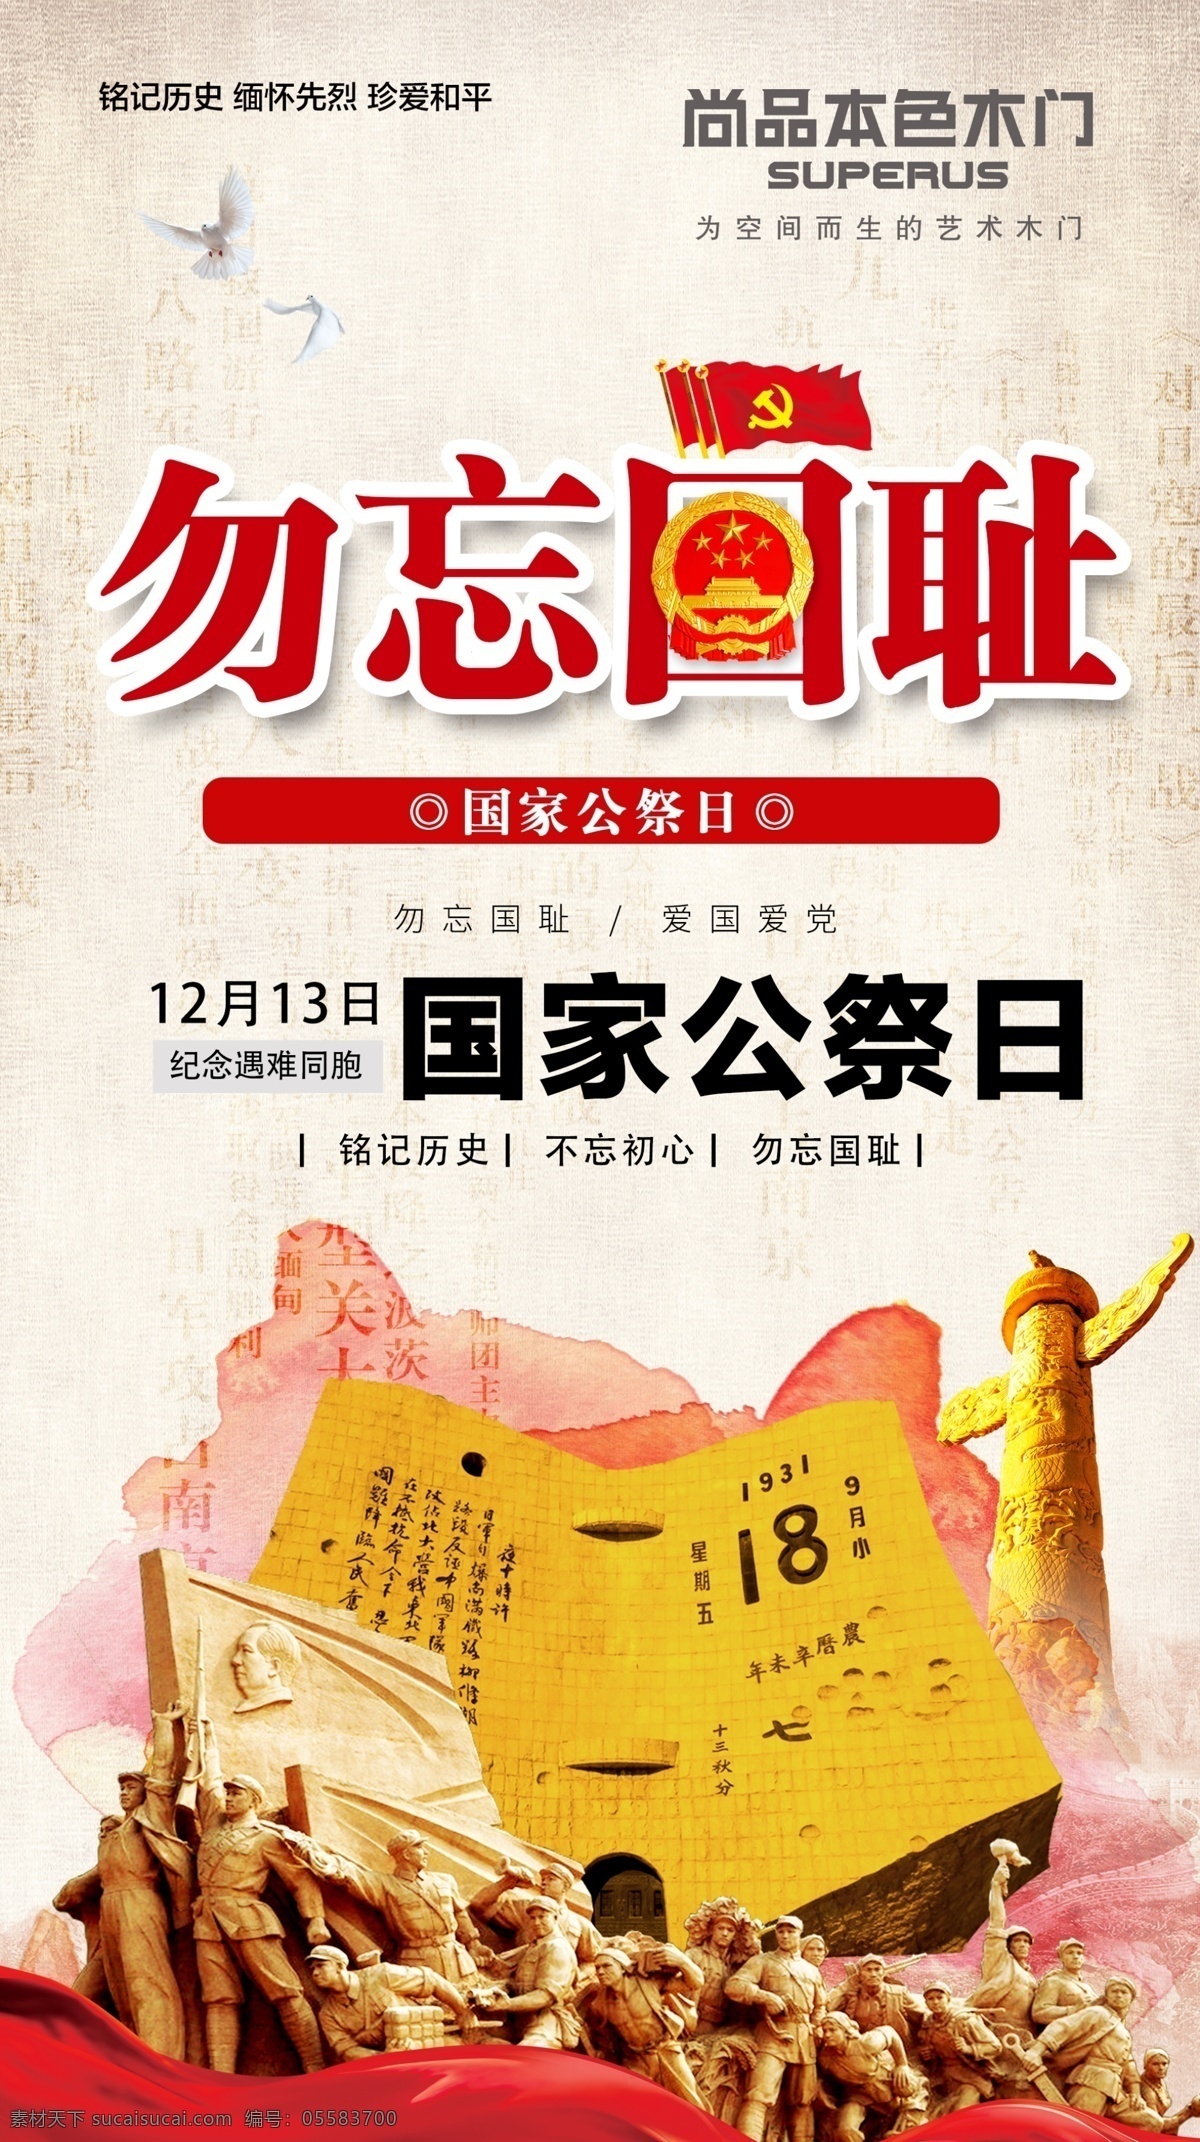 南京大屠杀 国家祭祀日 公祭日 公祭 12月13日 三十万 文化艺术